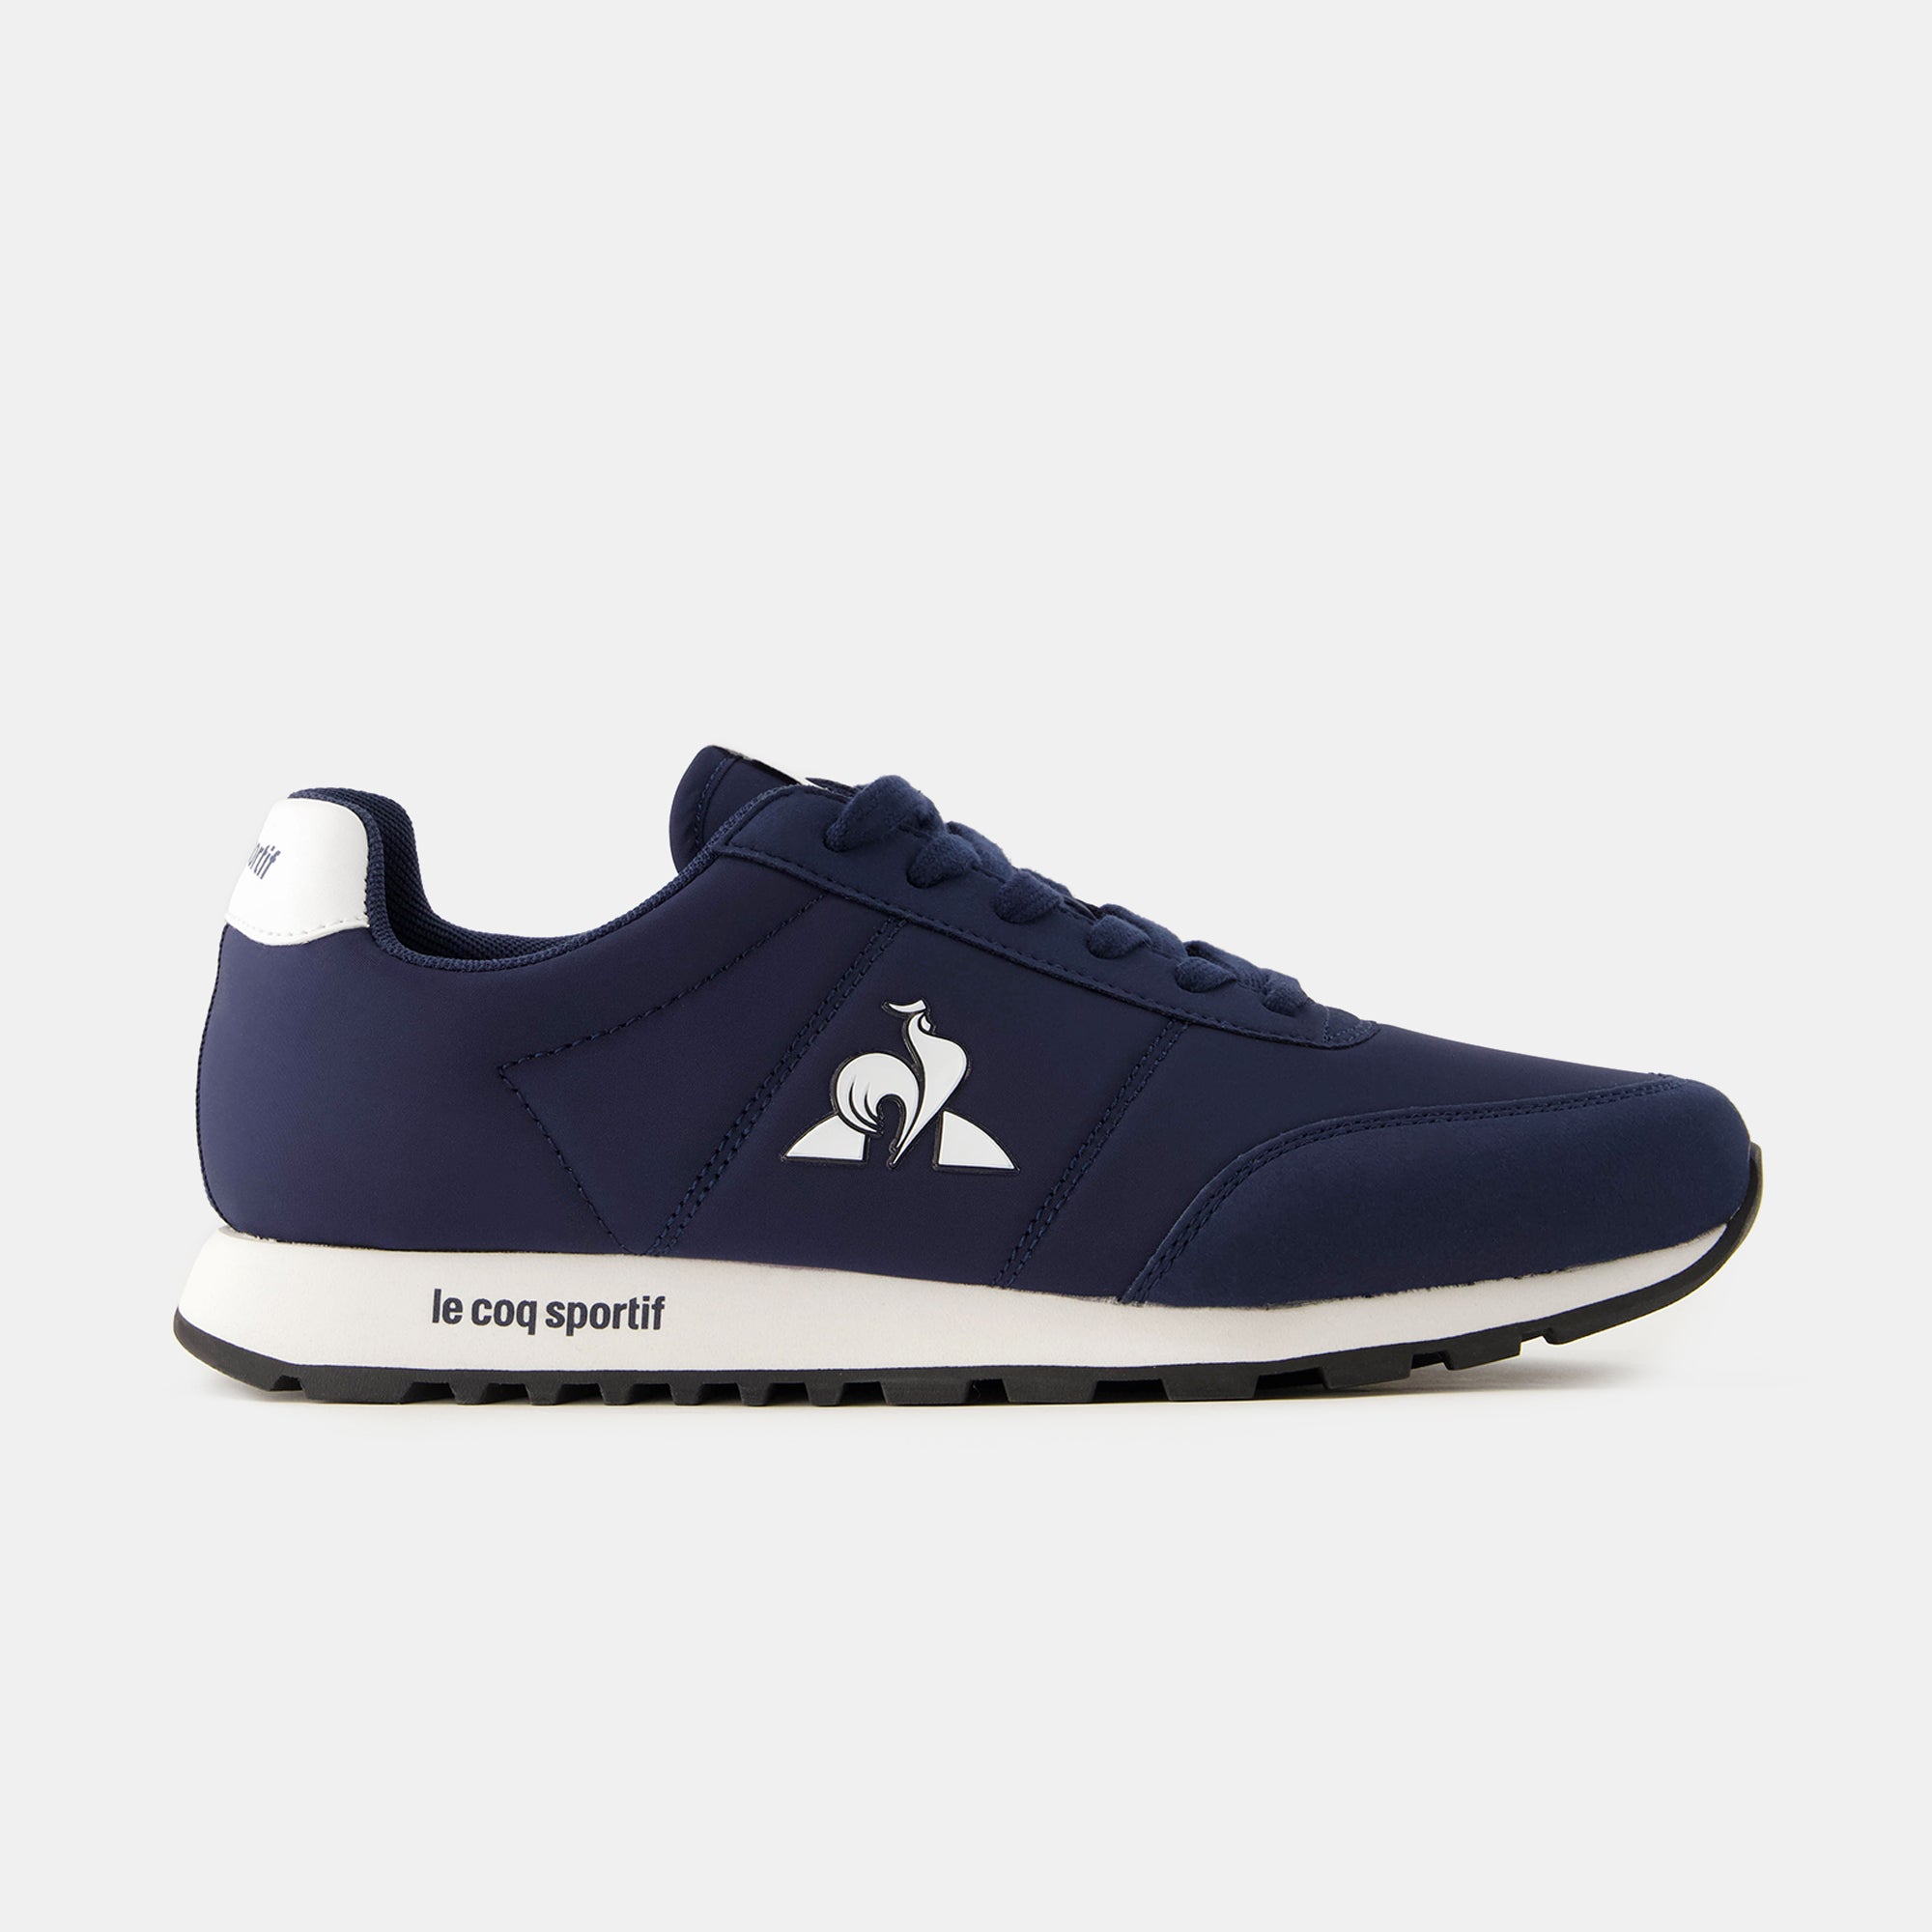 2423240-RACERONE_2 dress blue/ blue  | Shoes RACERONE_2 Unisex